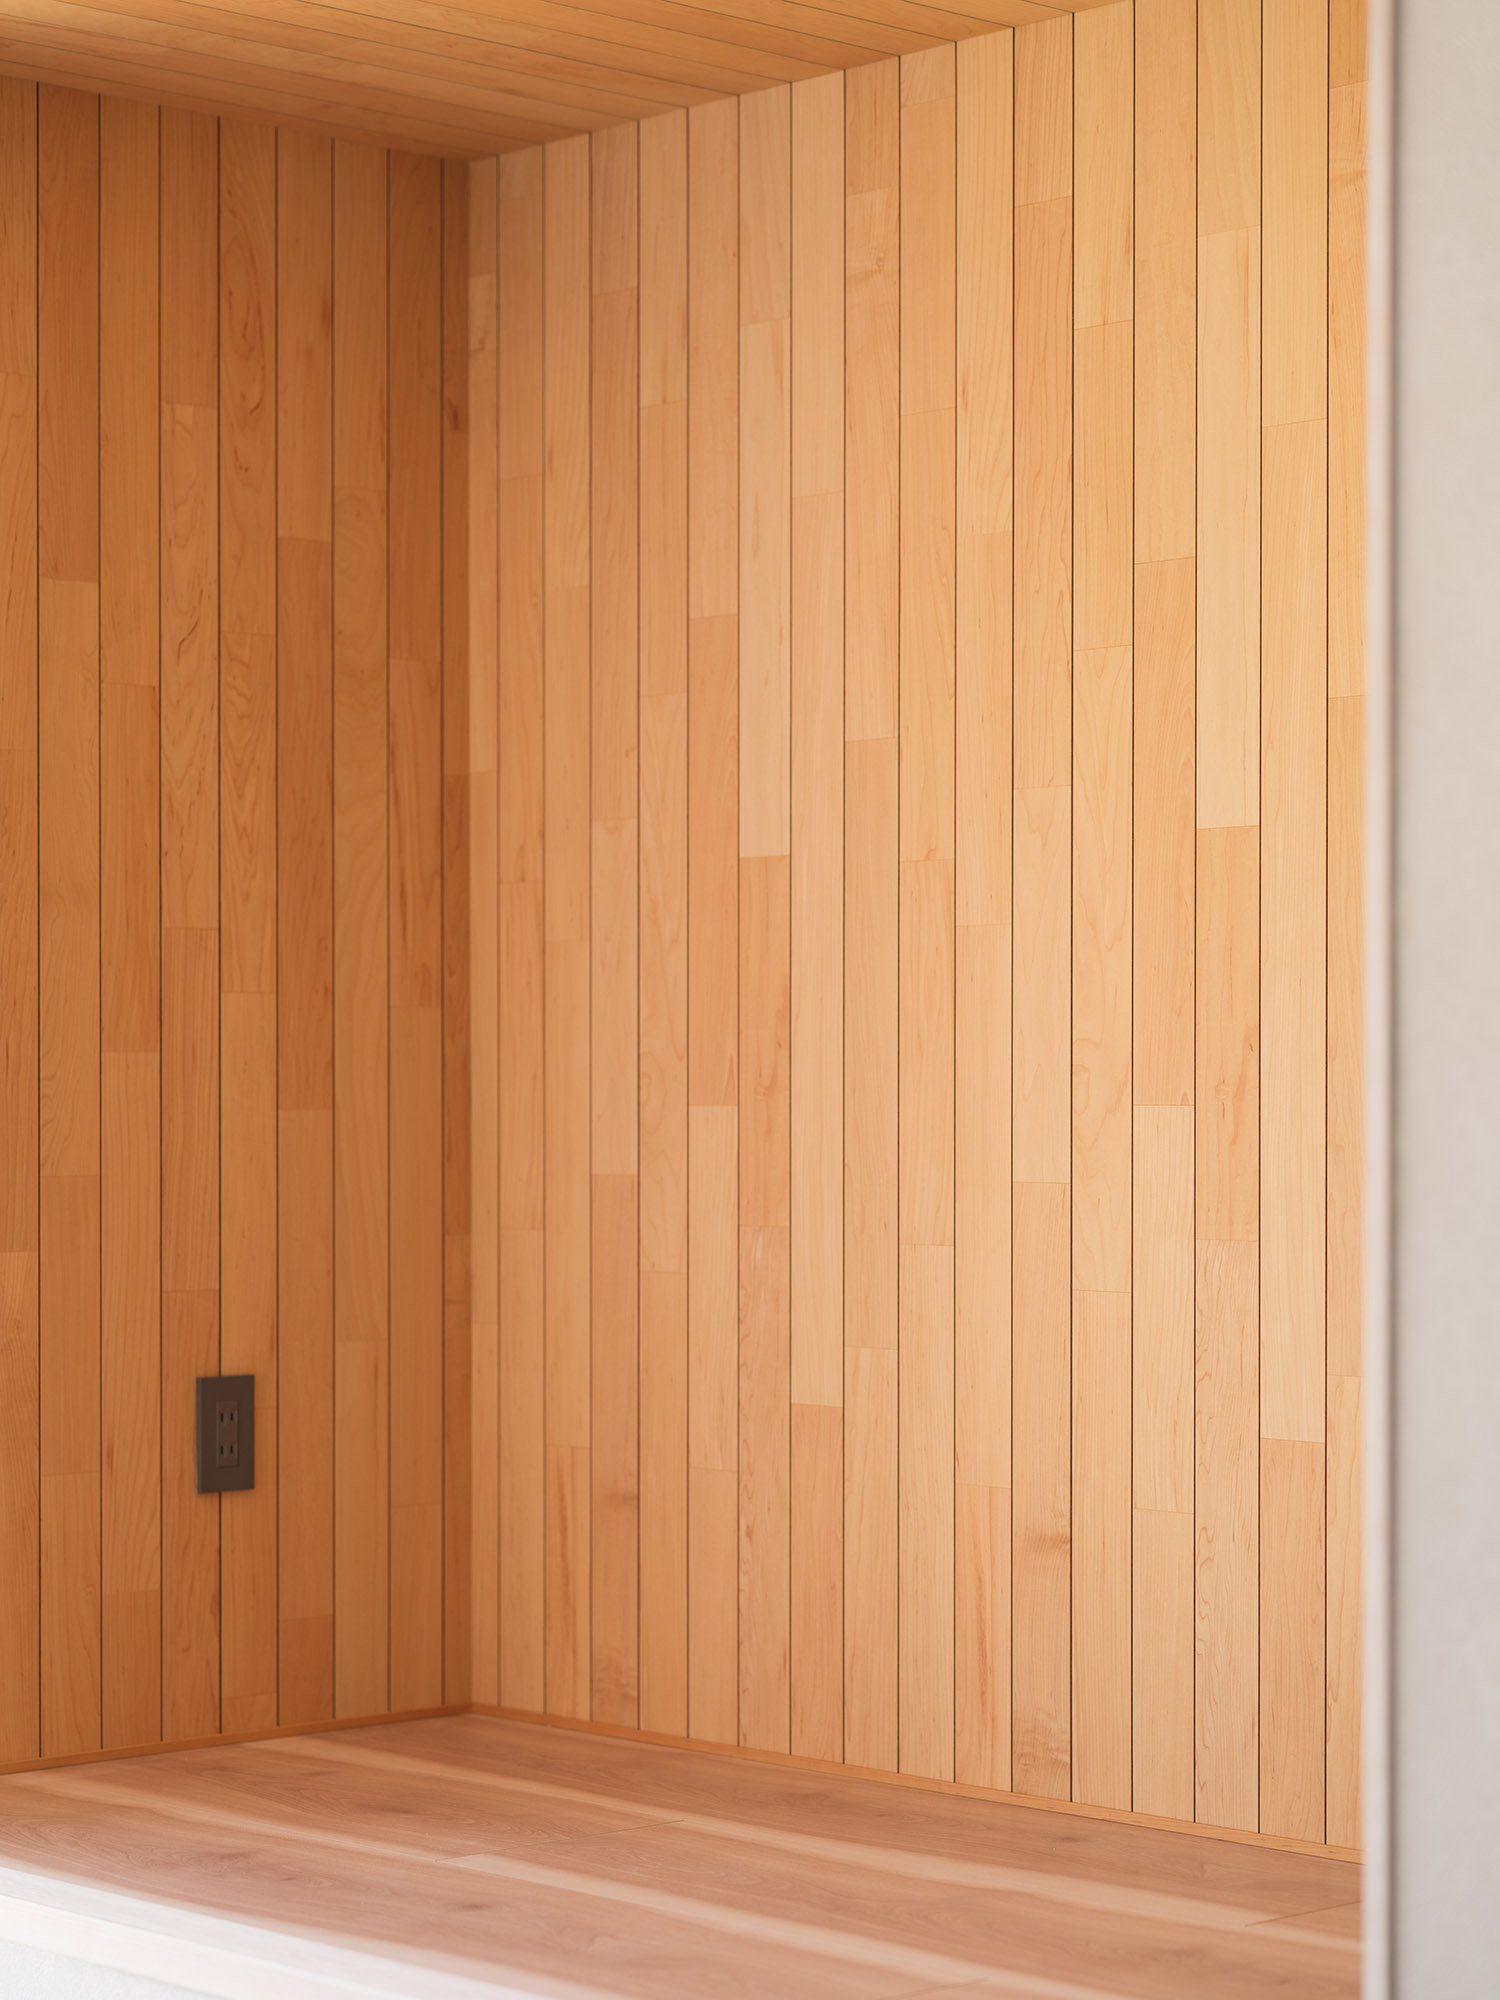 床と壁で異なる木材を使った空間・デザイン住宅